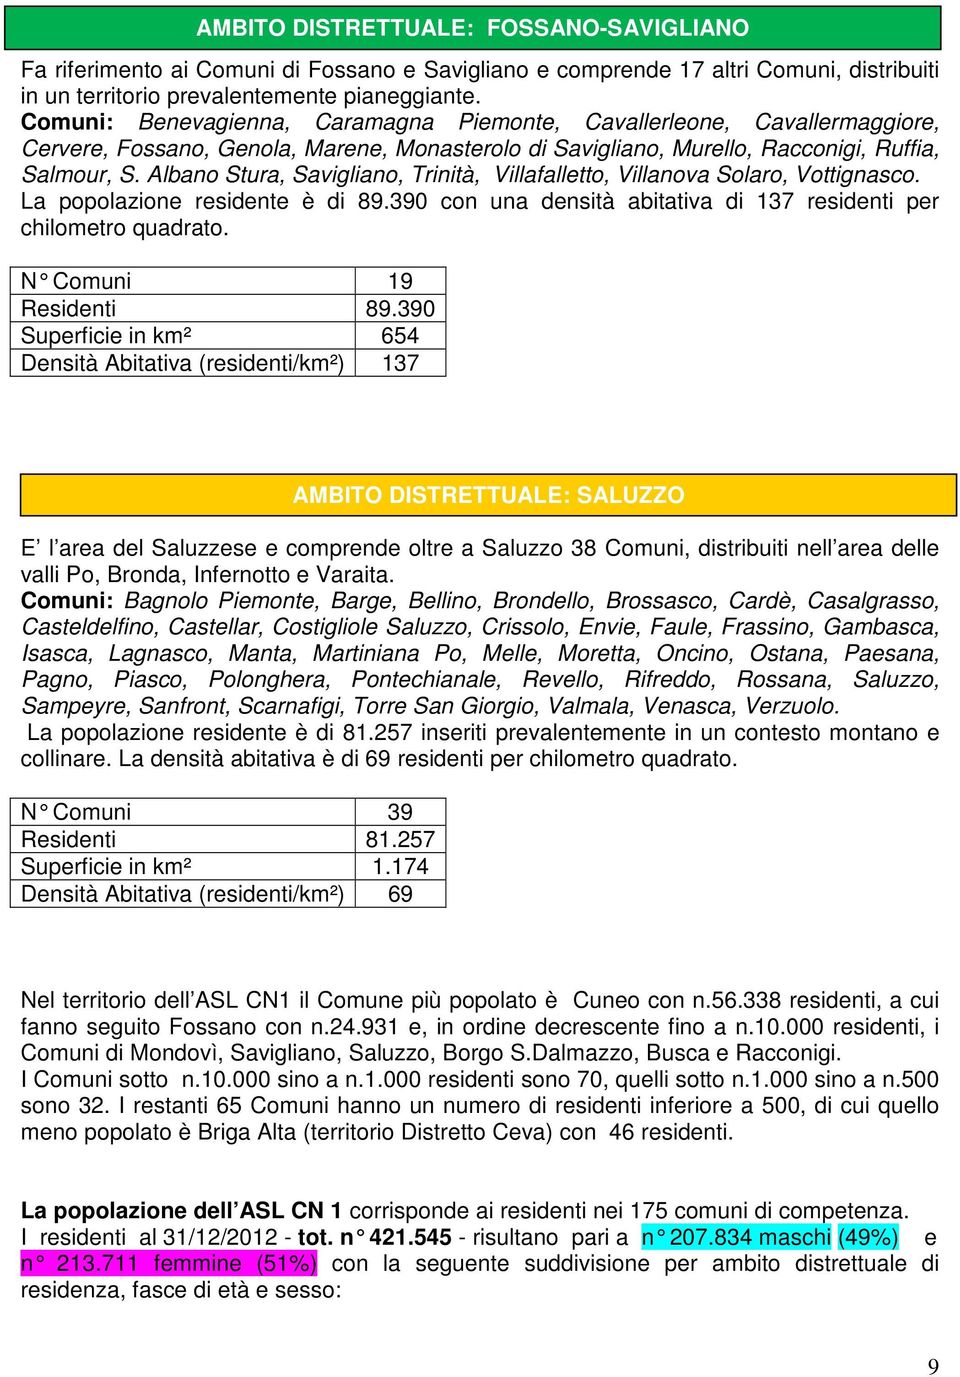 Albano Stura, Savigliano, Trinità, Villafalletto, Villanova Solaro, Vottignasco. La popolazione residente è di 89.390 con una densità abitativa di 137 residenti per chilometro quadrato.